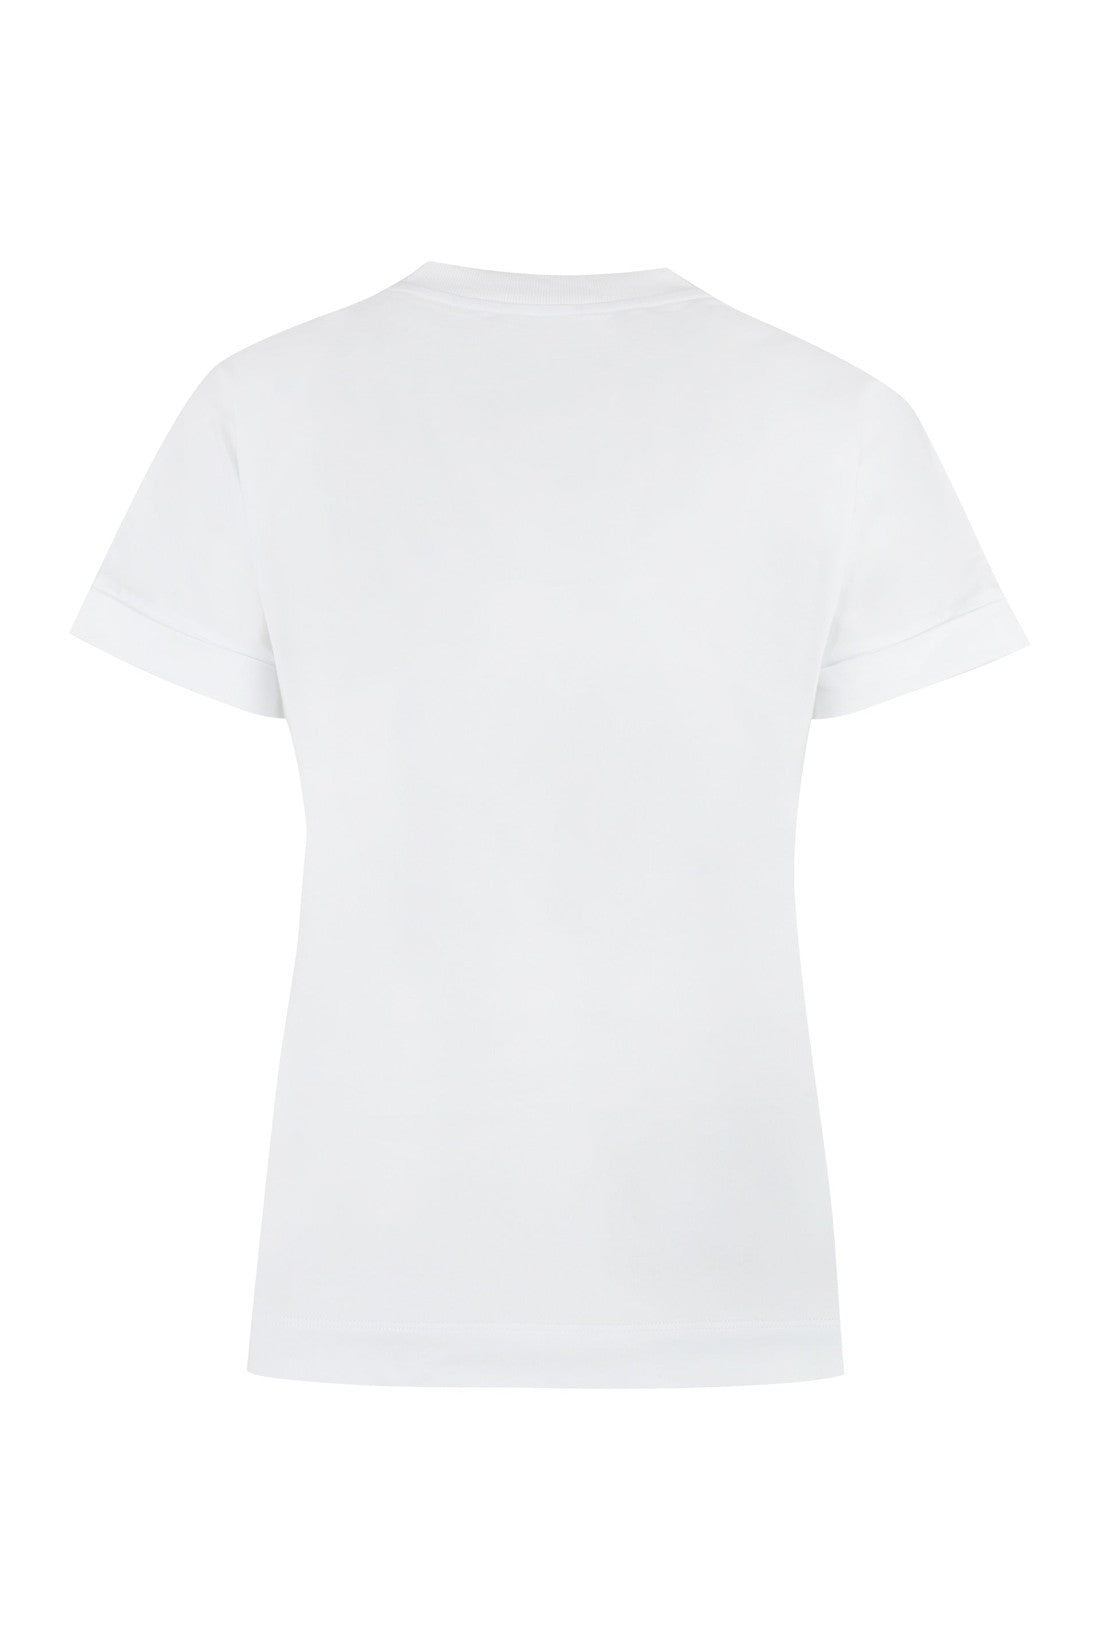 Peserico-OUTLET-SALE-Cotton crew-neck T-shirt-ARCHIVIST